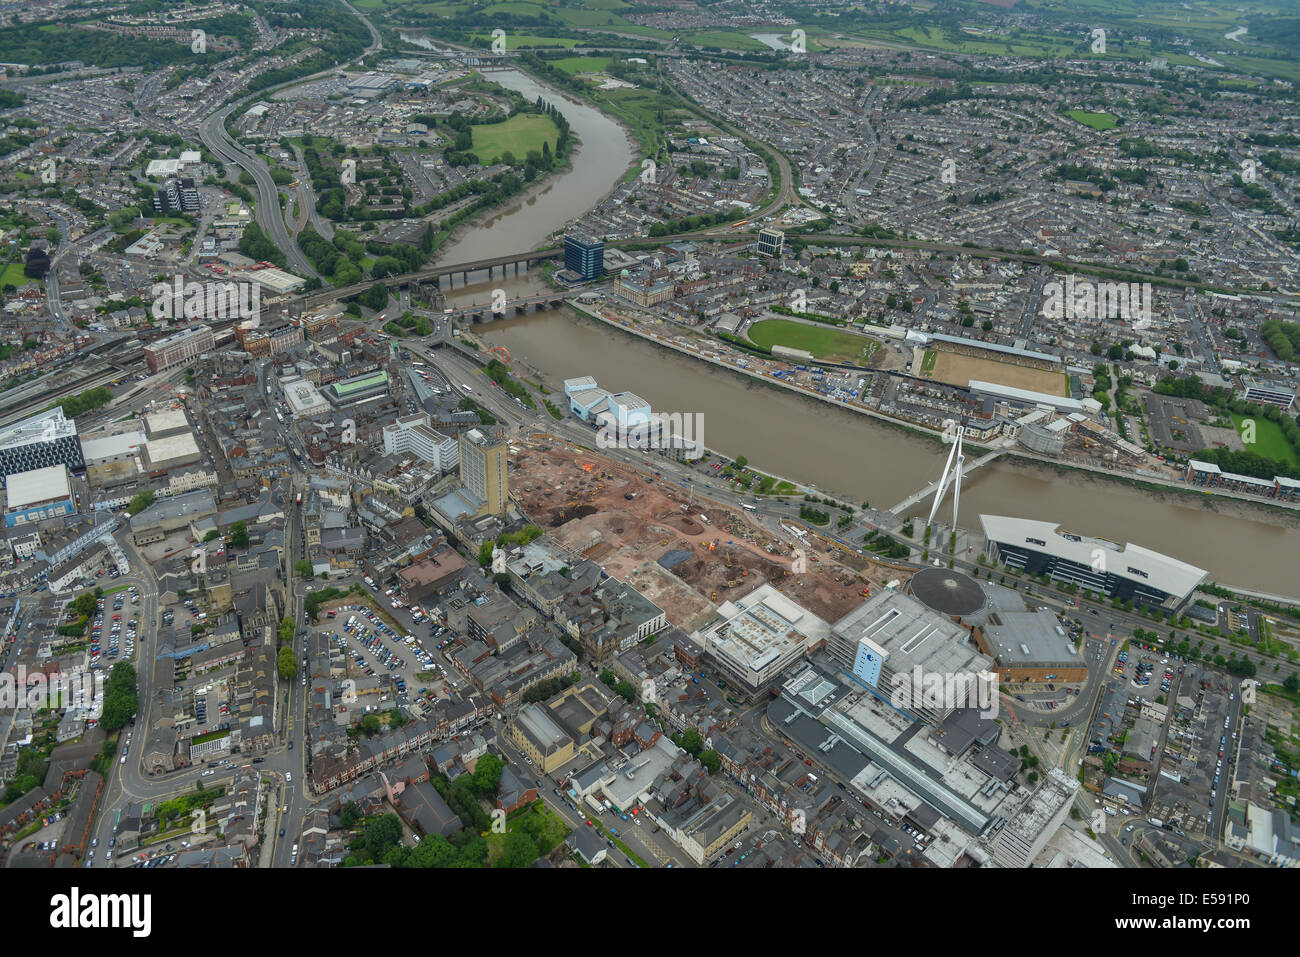 Une vue aérienne de Newport, Gwent, montrant le centre-ville et de la zone autour de la rivière Usk. Banque D'Images